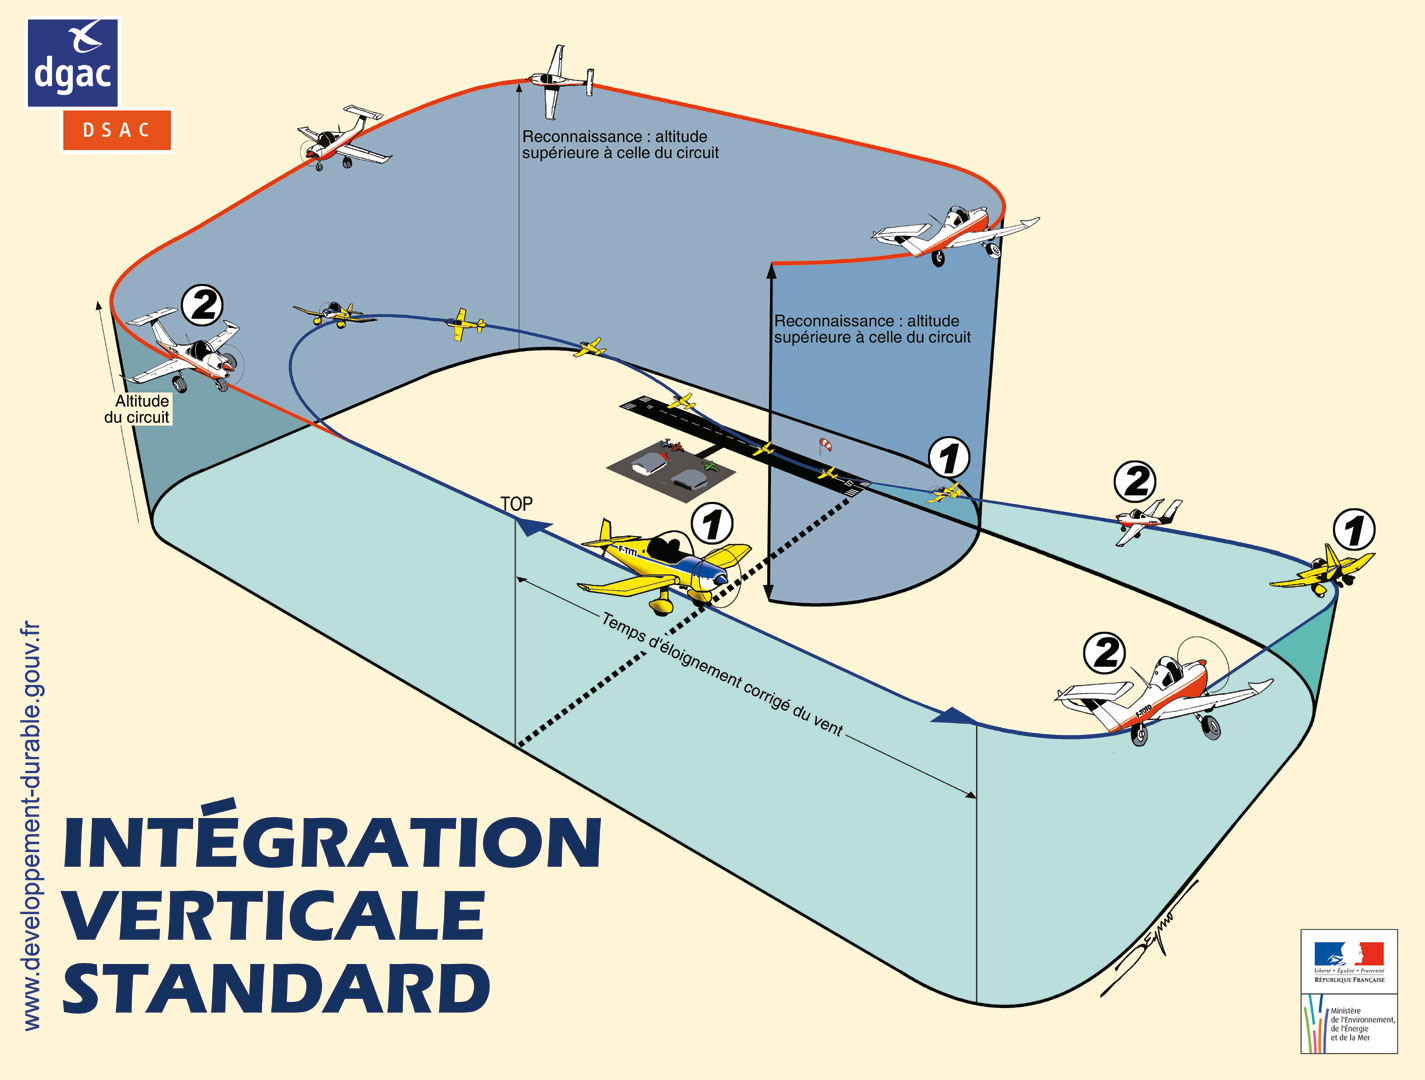 Affiche sur l'intégration dans un aérodrome sécurité aérienne